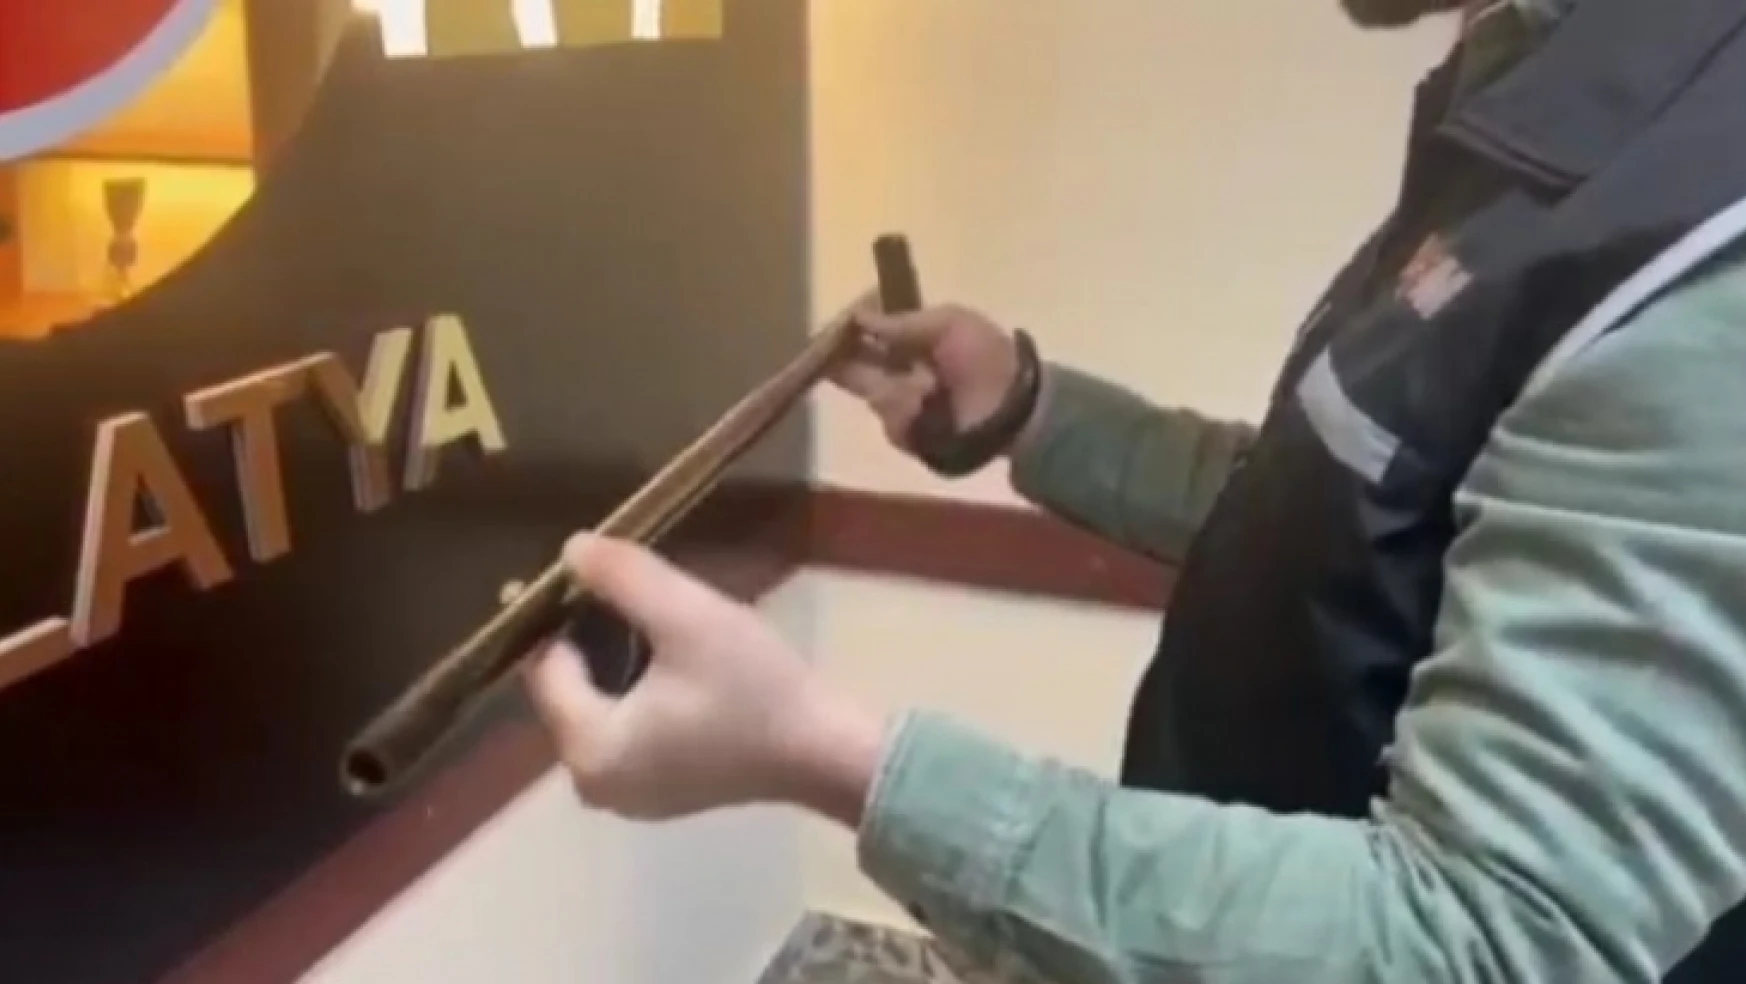 Malatya'da baston görünümlü silah ele geçirildi